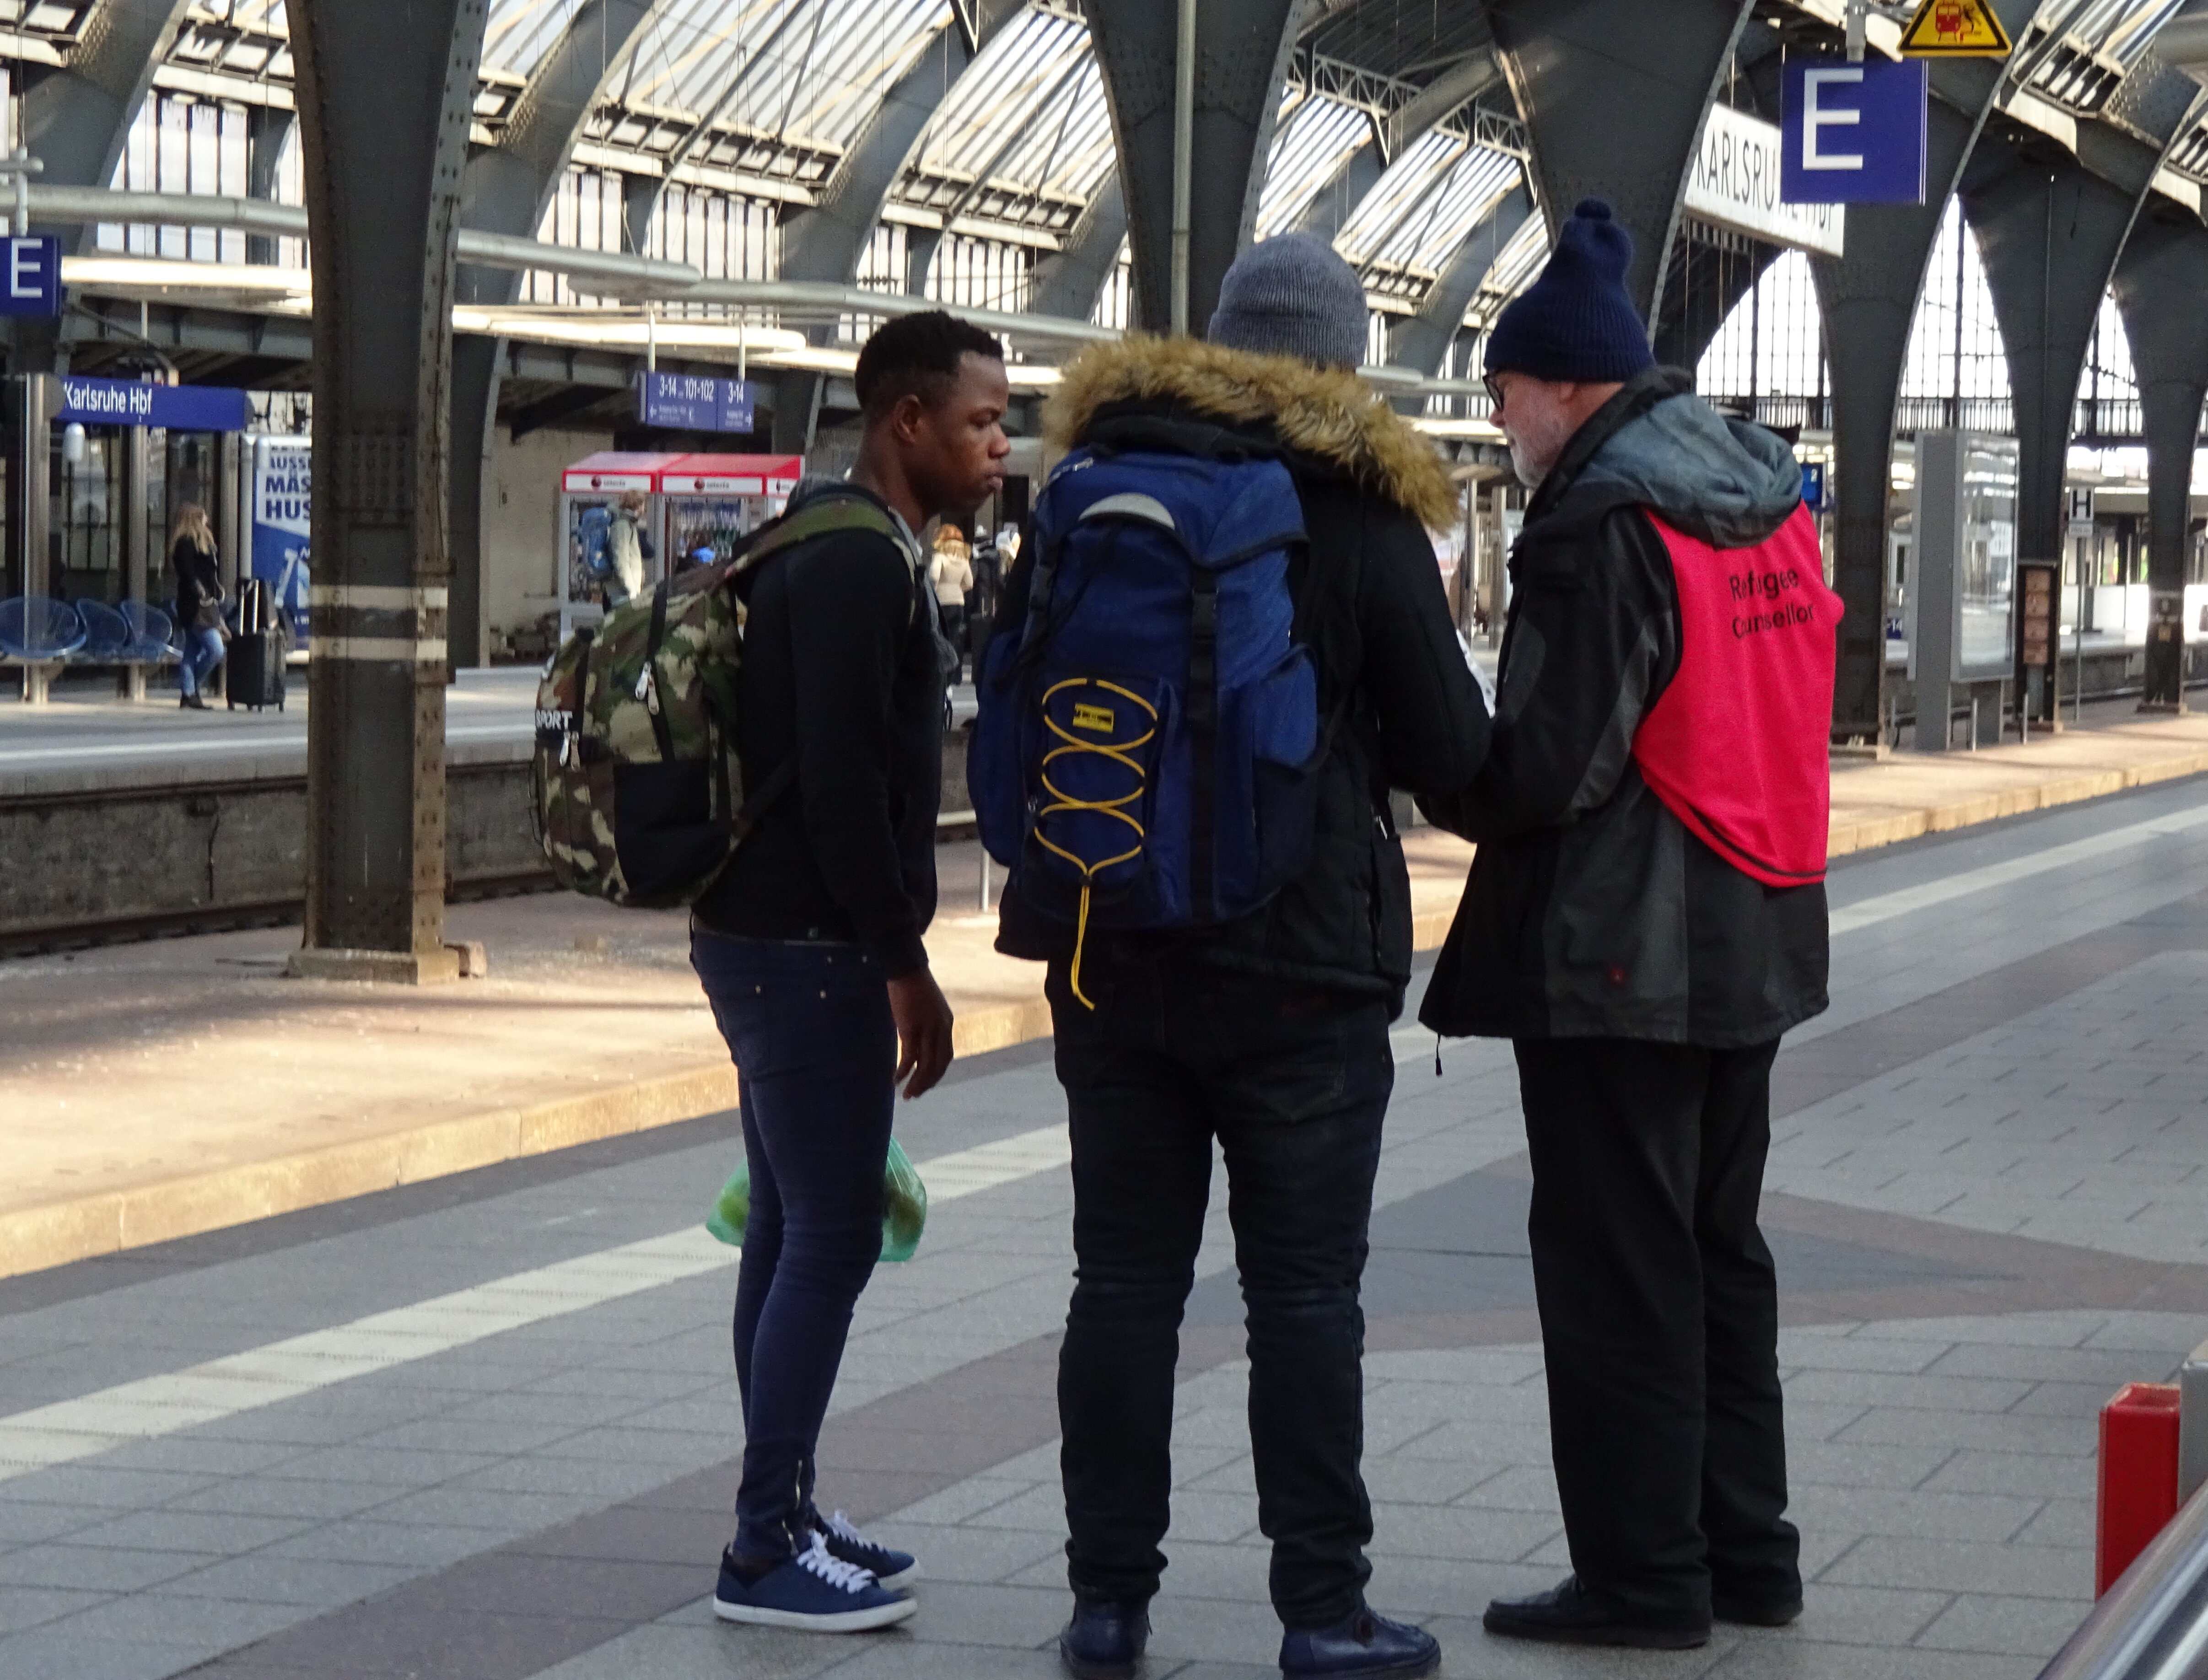 Das Bild steht symbolisch für die Flüchtlingsberatung der Caritas und Diakonie Karlsruhe. Es zeigt drei Personen in einer Gesprächssituation am Karlsruher Hauptbahnhof.